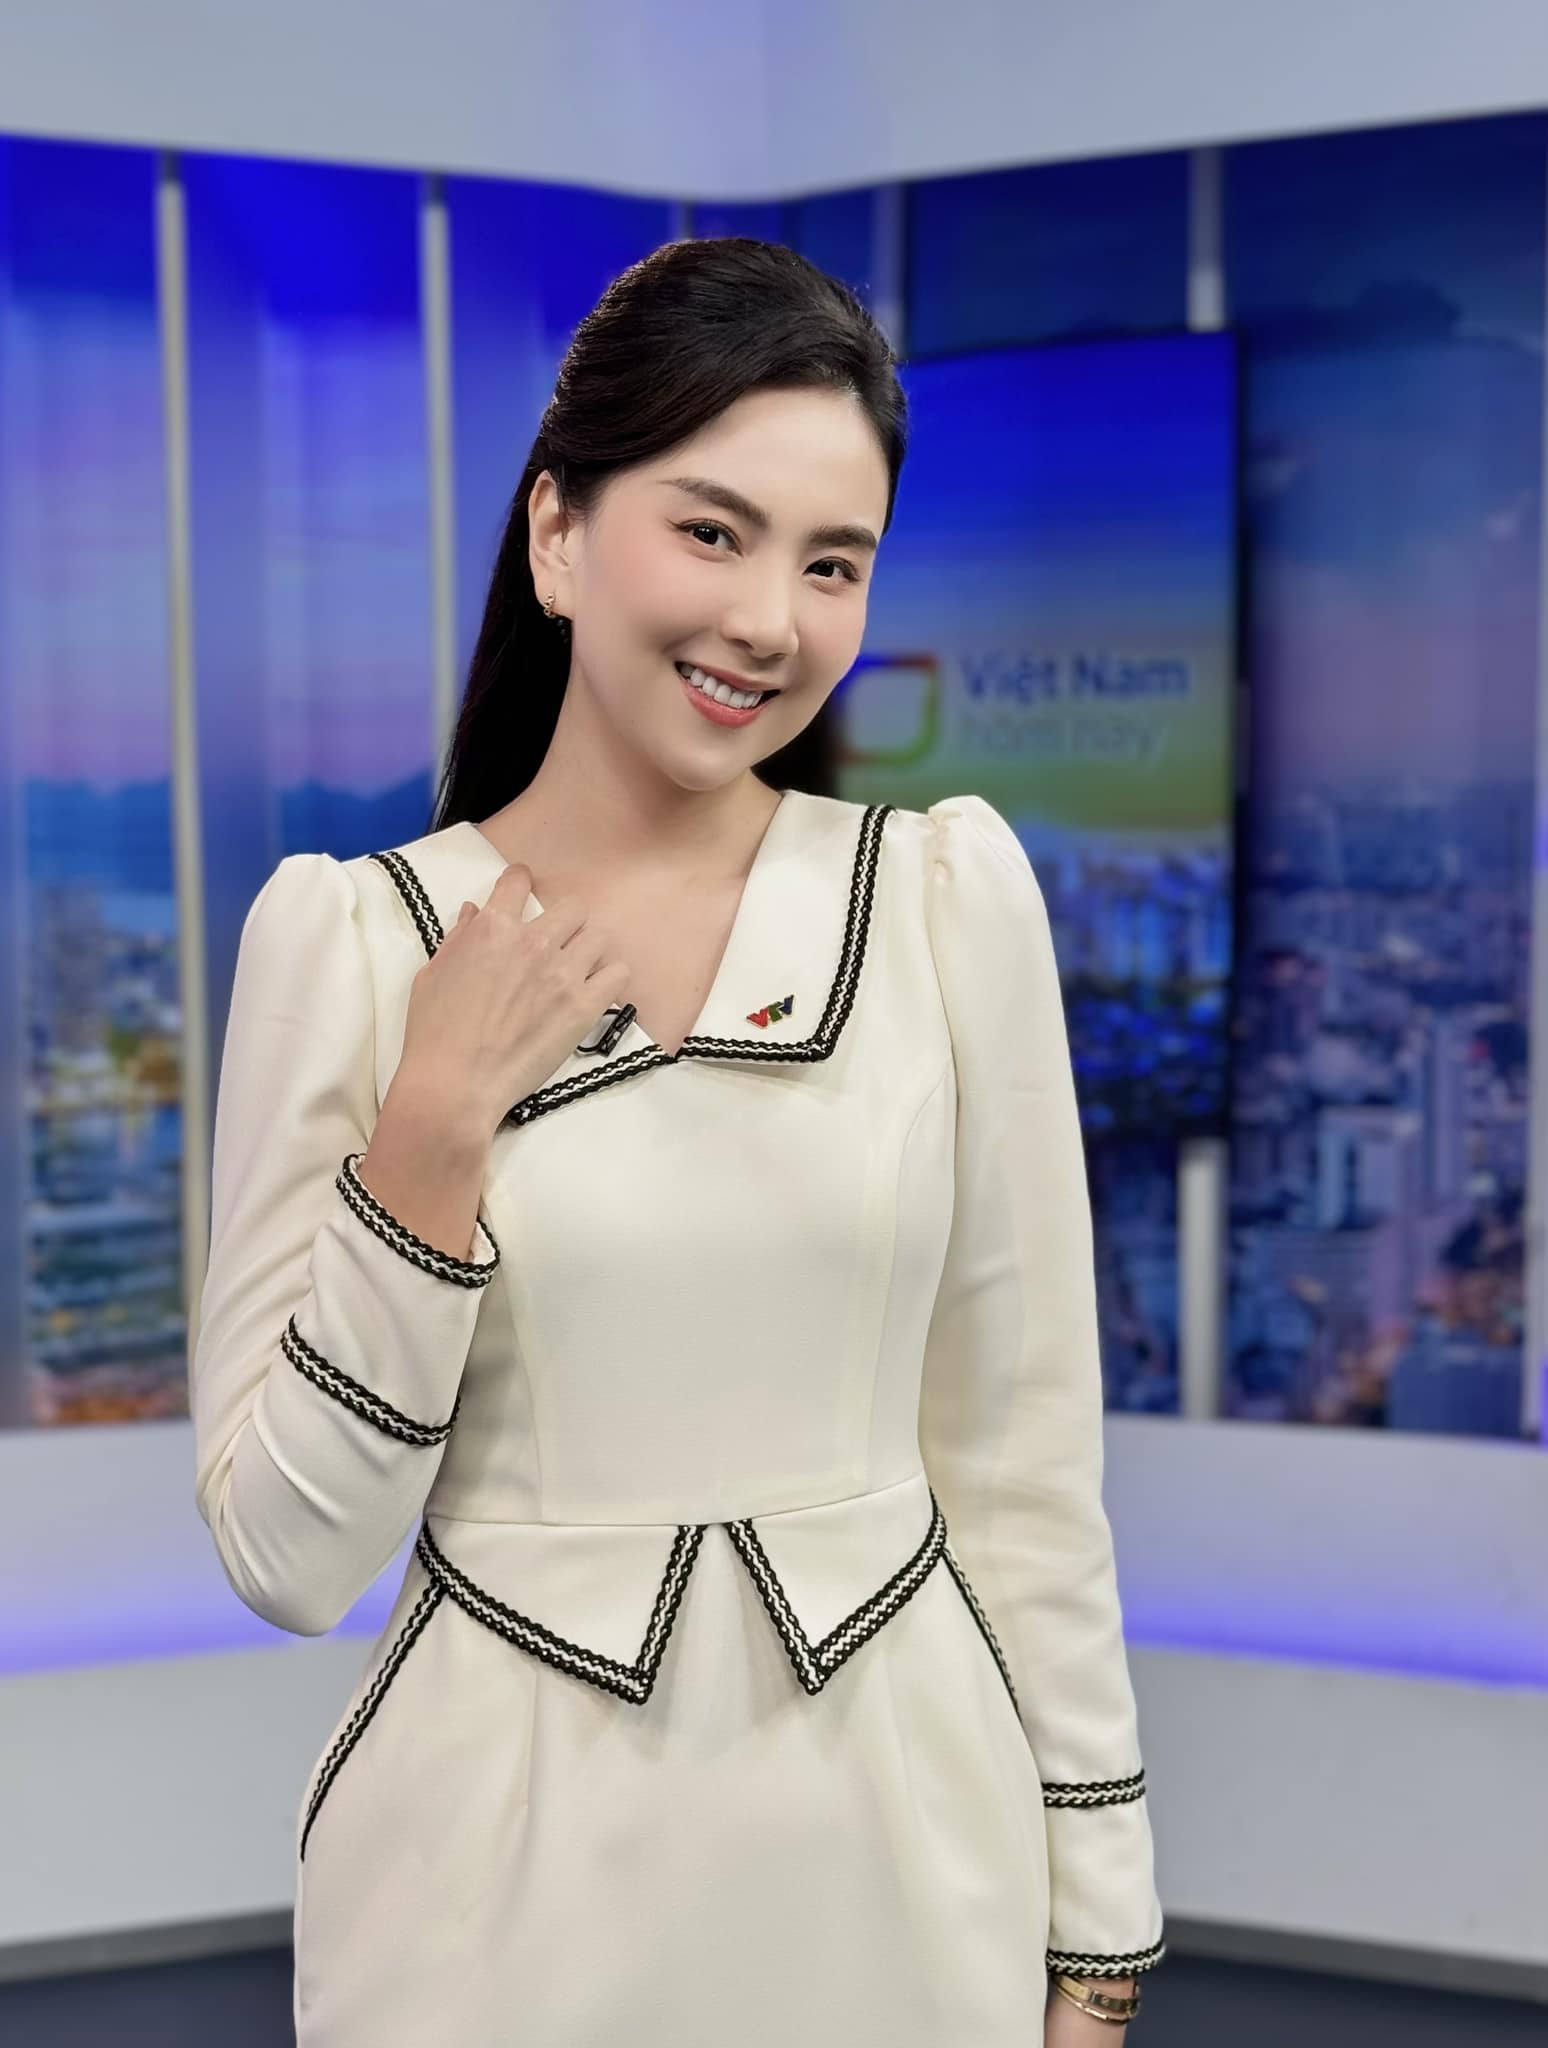 MC đẹp nhất VTV - Mai Ngọc thông báo ly hôn chồng sau 17 năm gắn bó, không có con chung - ảnh 1